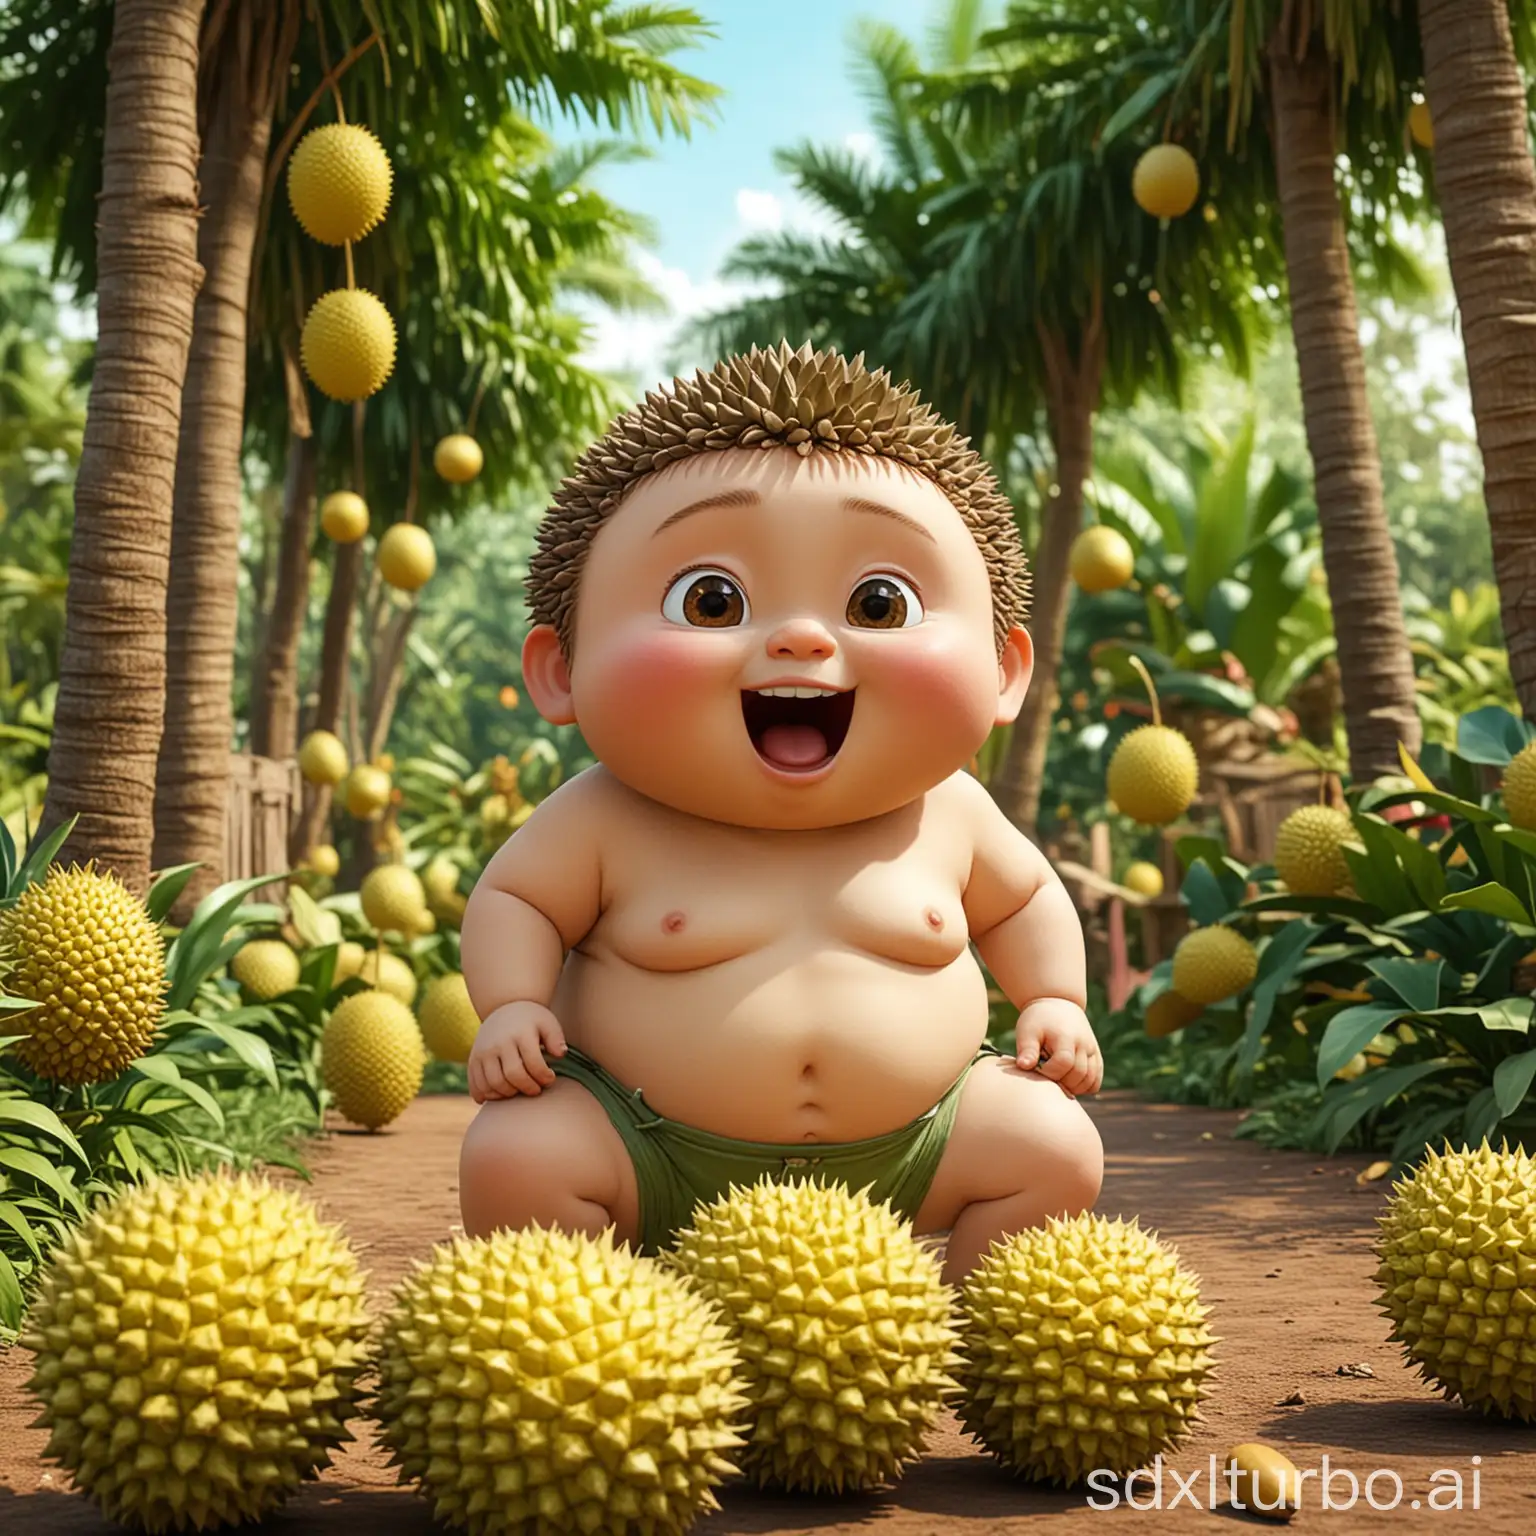 Joyful-Chubby-Boy-Playing-in-Lush-Durian-Garden